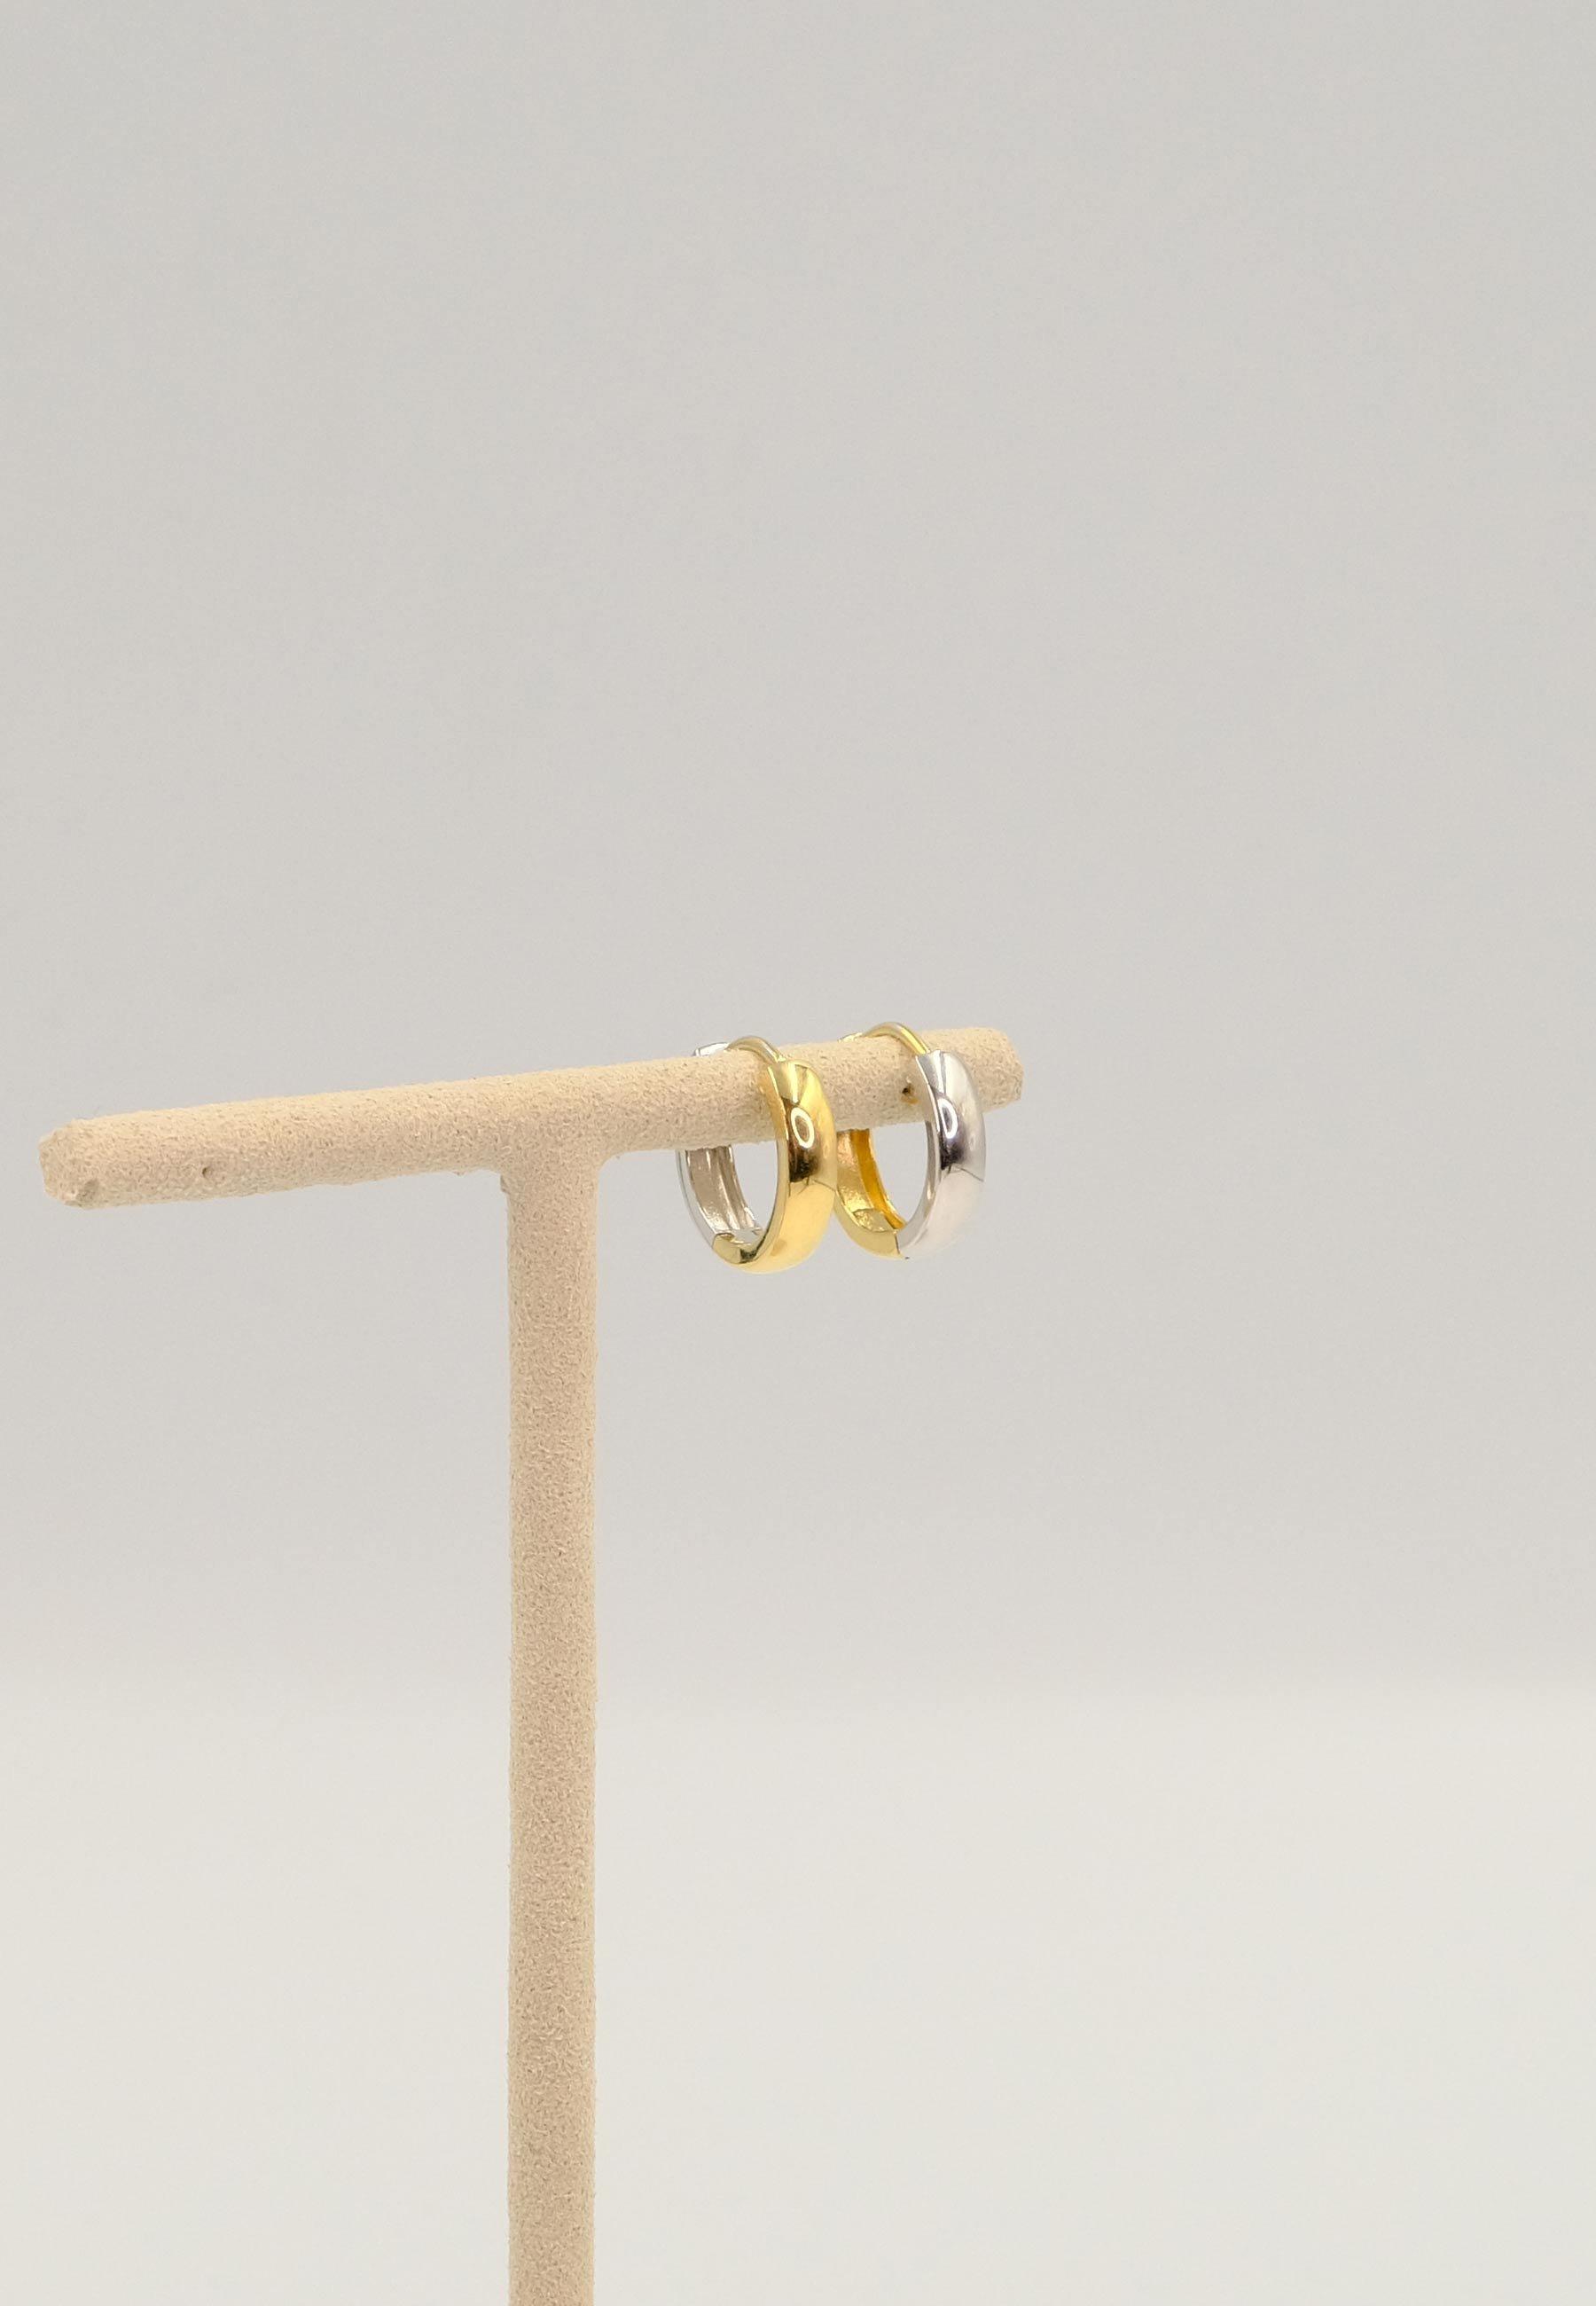 MUAU Schmuck  Créoles bicolores jaune/blanc or 750 Charnière profilée en U 15mm 